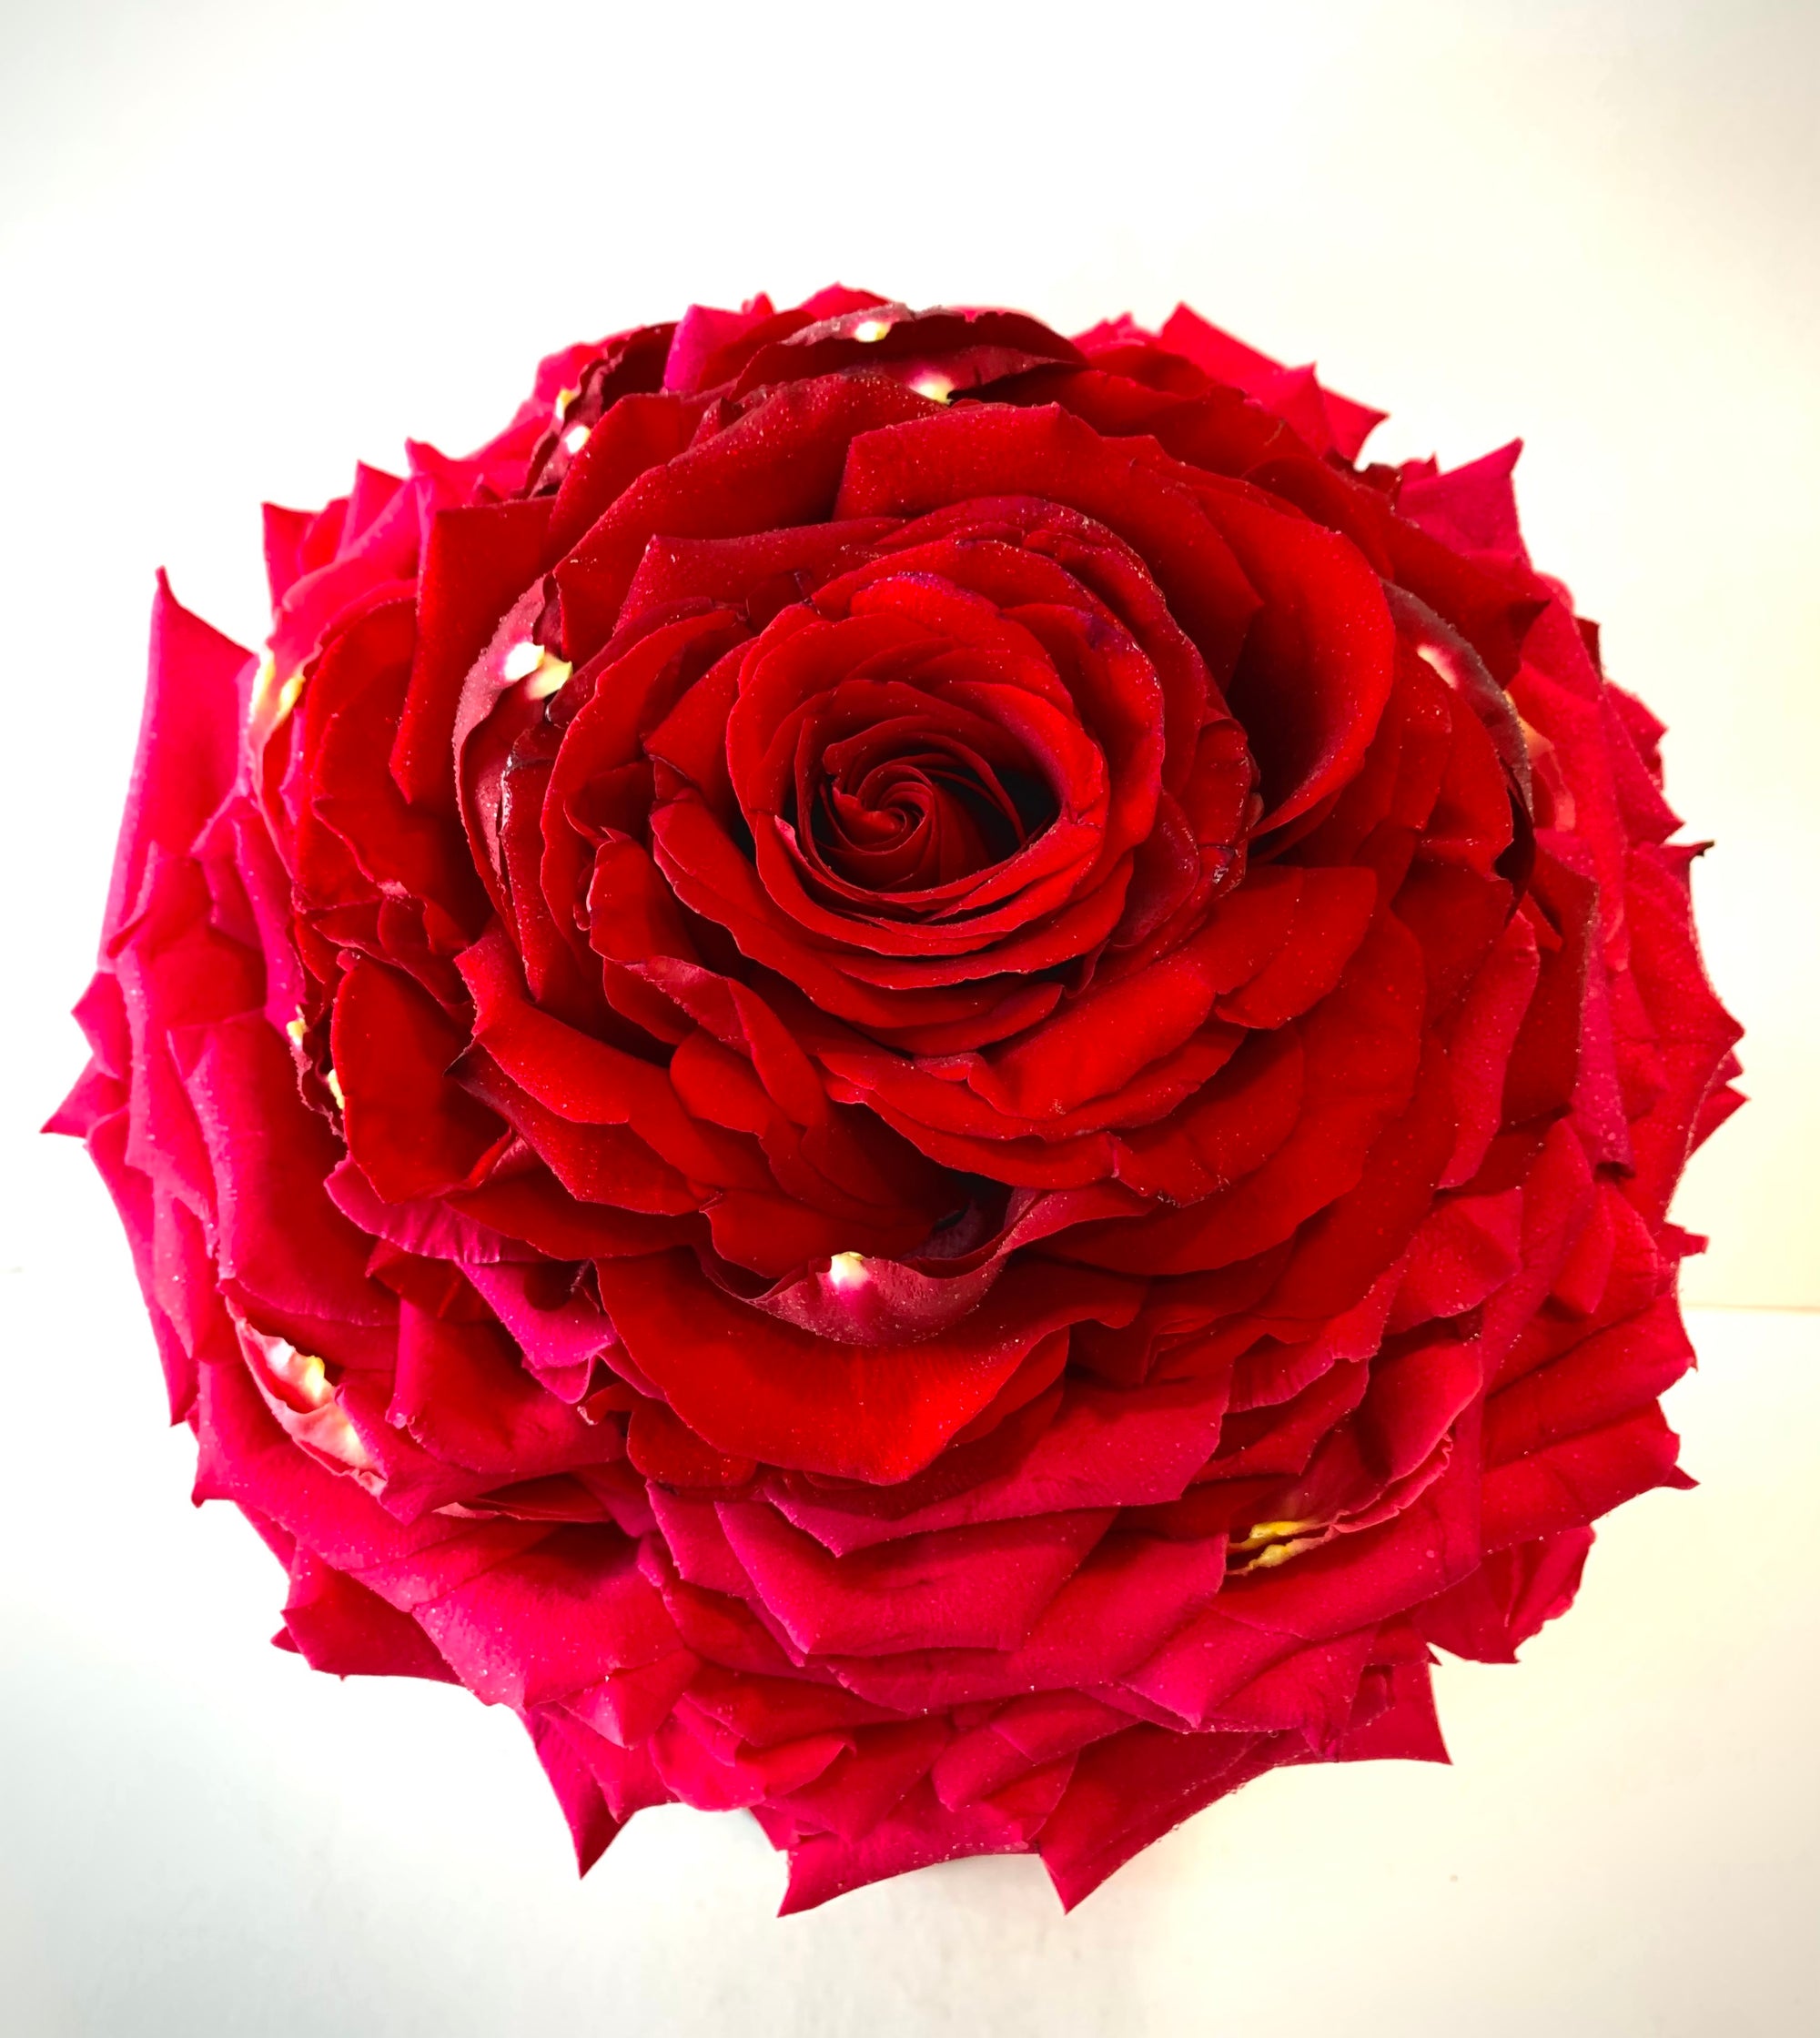 Nobleman School of Floral Design Workshop Bouquets Table Arrangements Wedding Events Roses Singapore